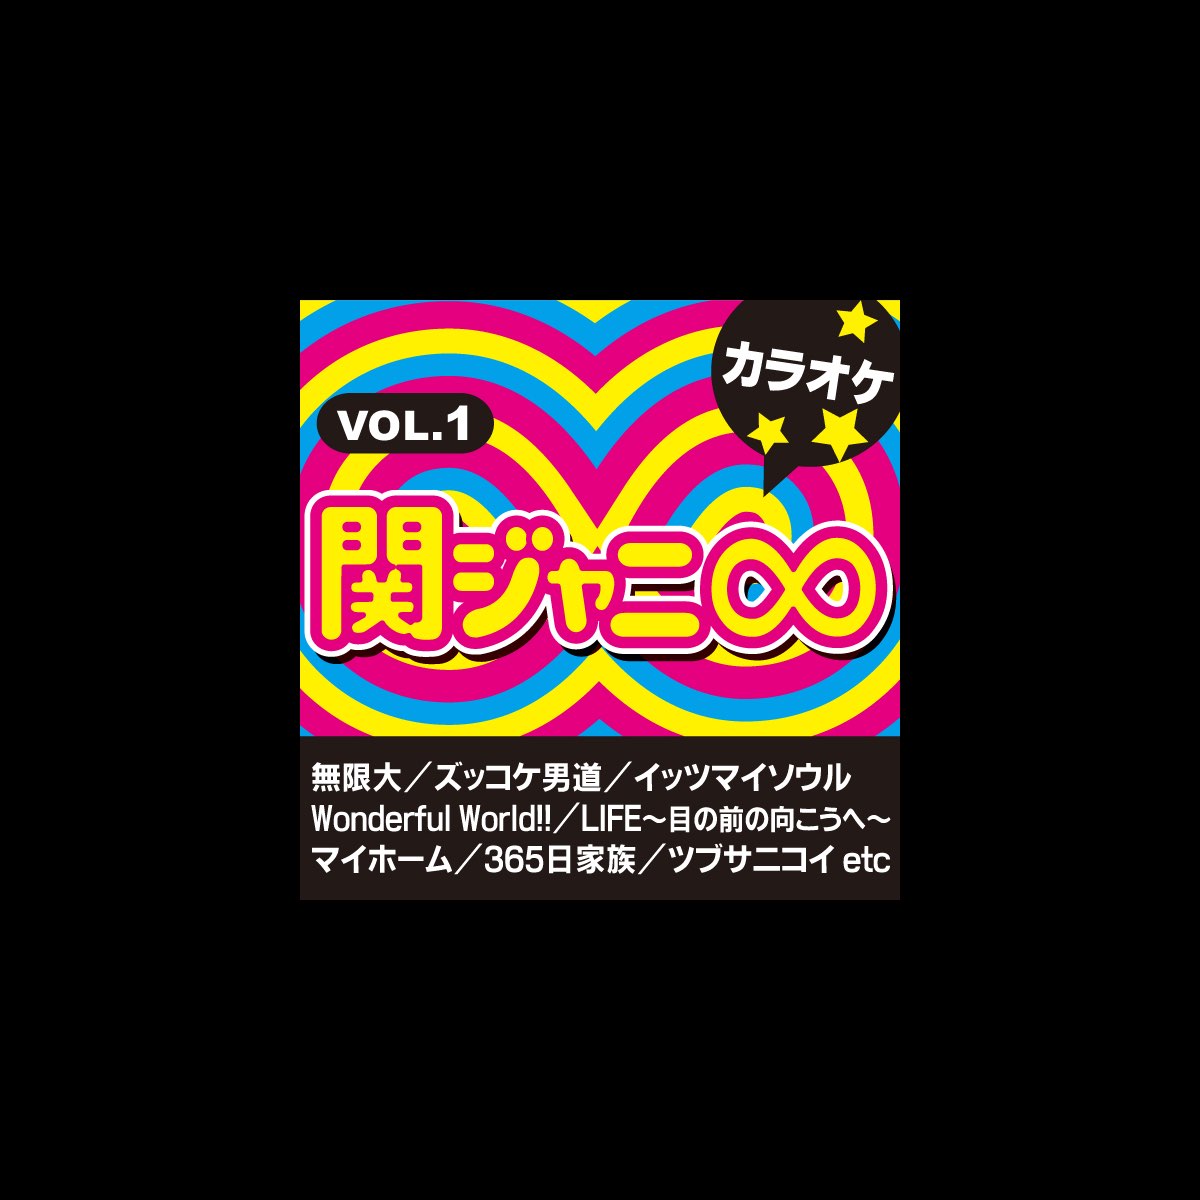 カラオケ歌っちゃ王の 関ジャニ カラオケ Vol 1 をapple Musicで